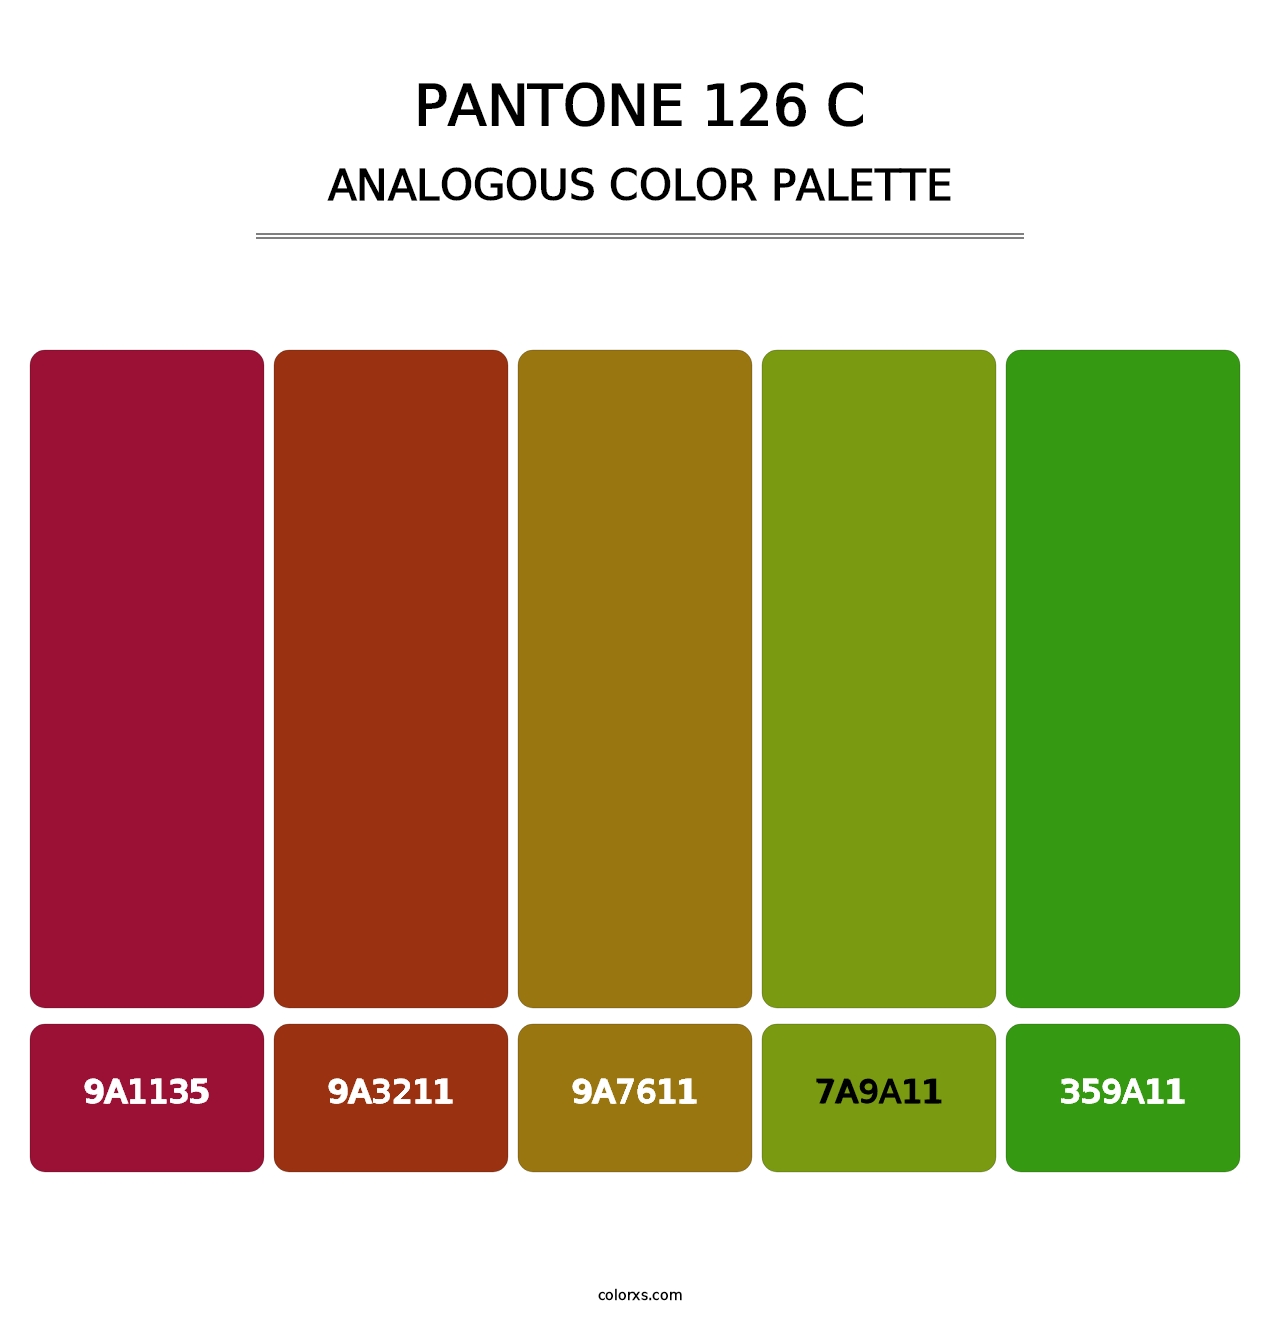 PANTONE 126 C - Analogous Color Palette